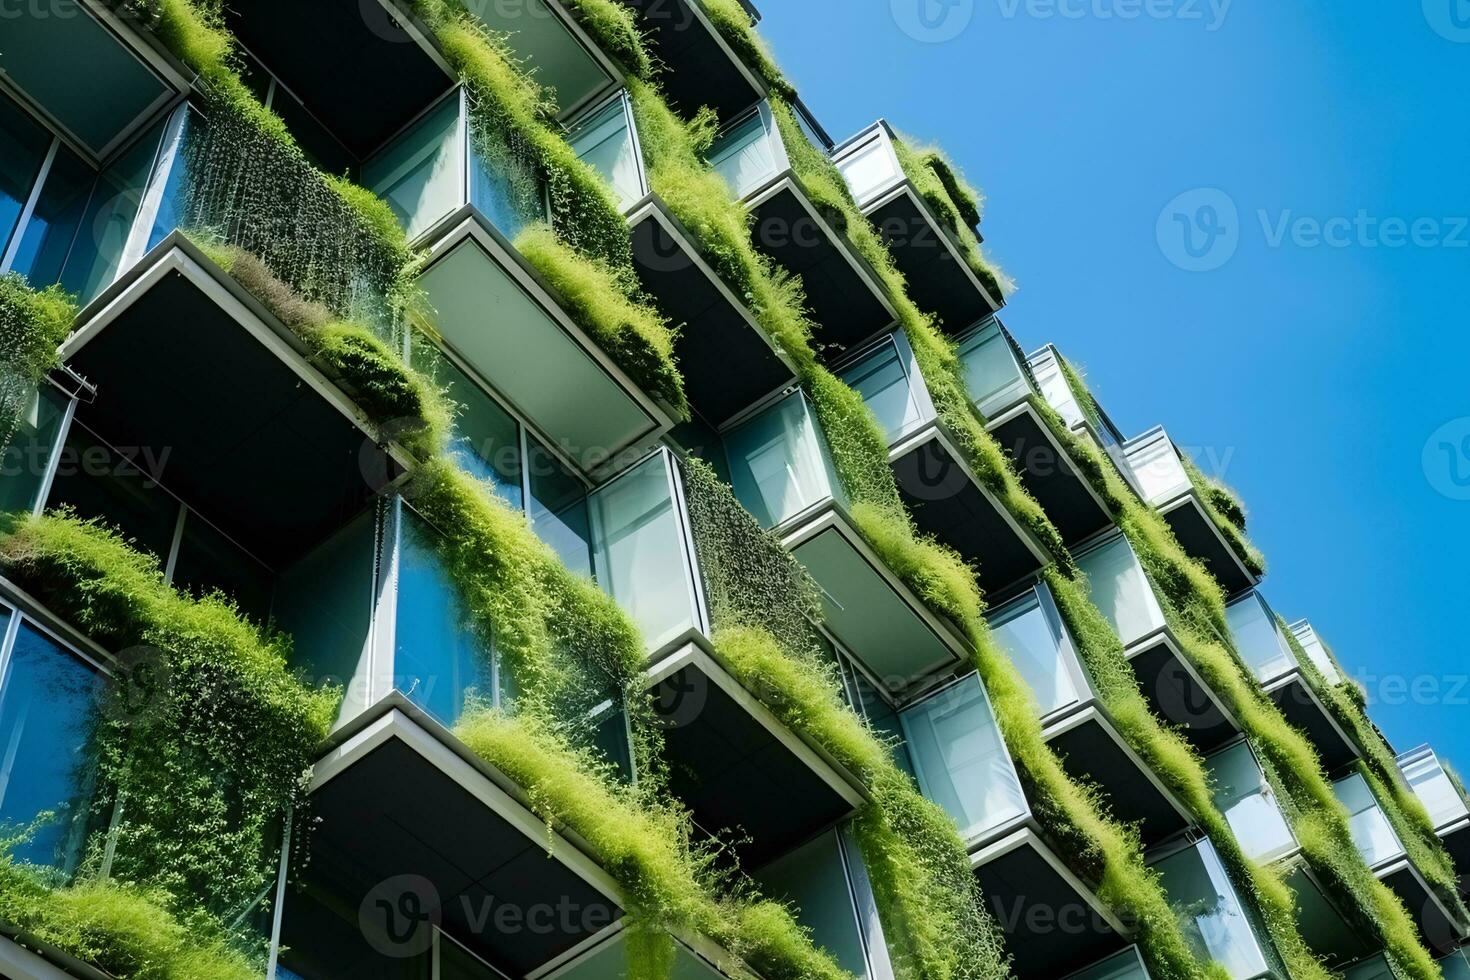 nachhaltig Grün Gebäude im modern Stadt. Grün die Architektur. umweltfreundlich Gebäude. nachhaltig Wohn Gebäude mit Vertikale Garten reduzieren co2. Wohnung mit Grün Umfeld. generativ ai. foto